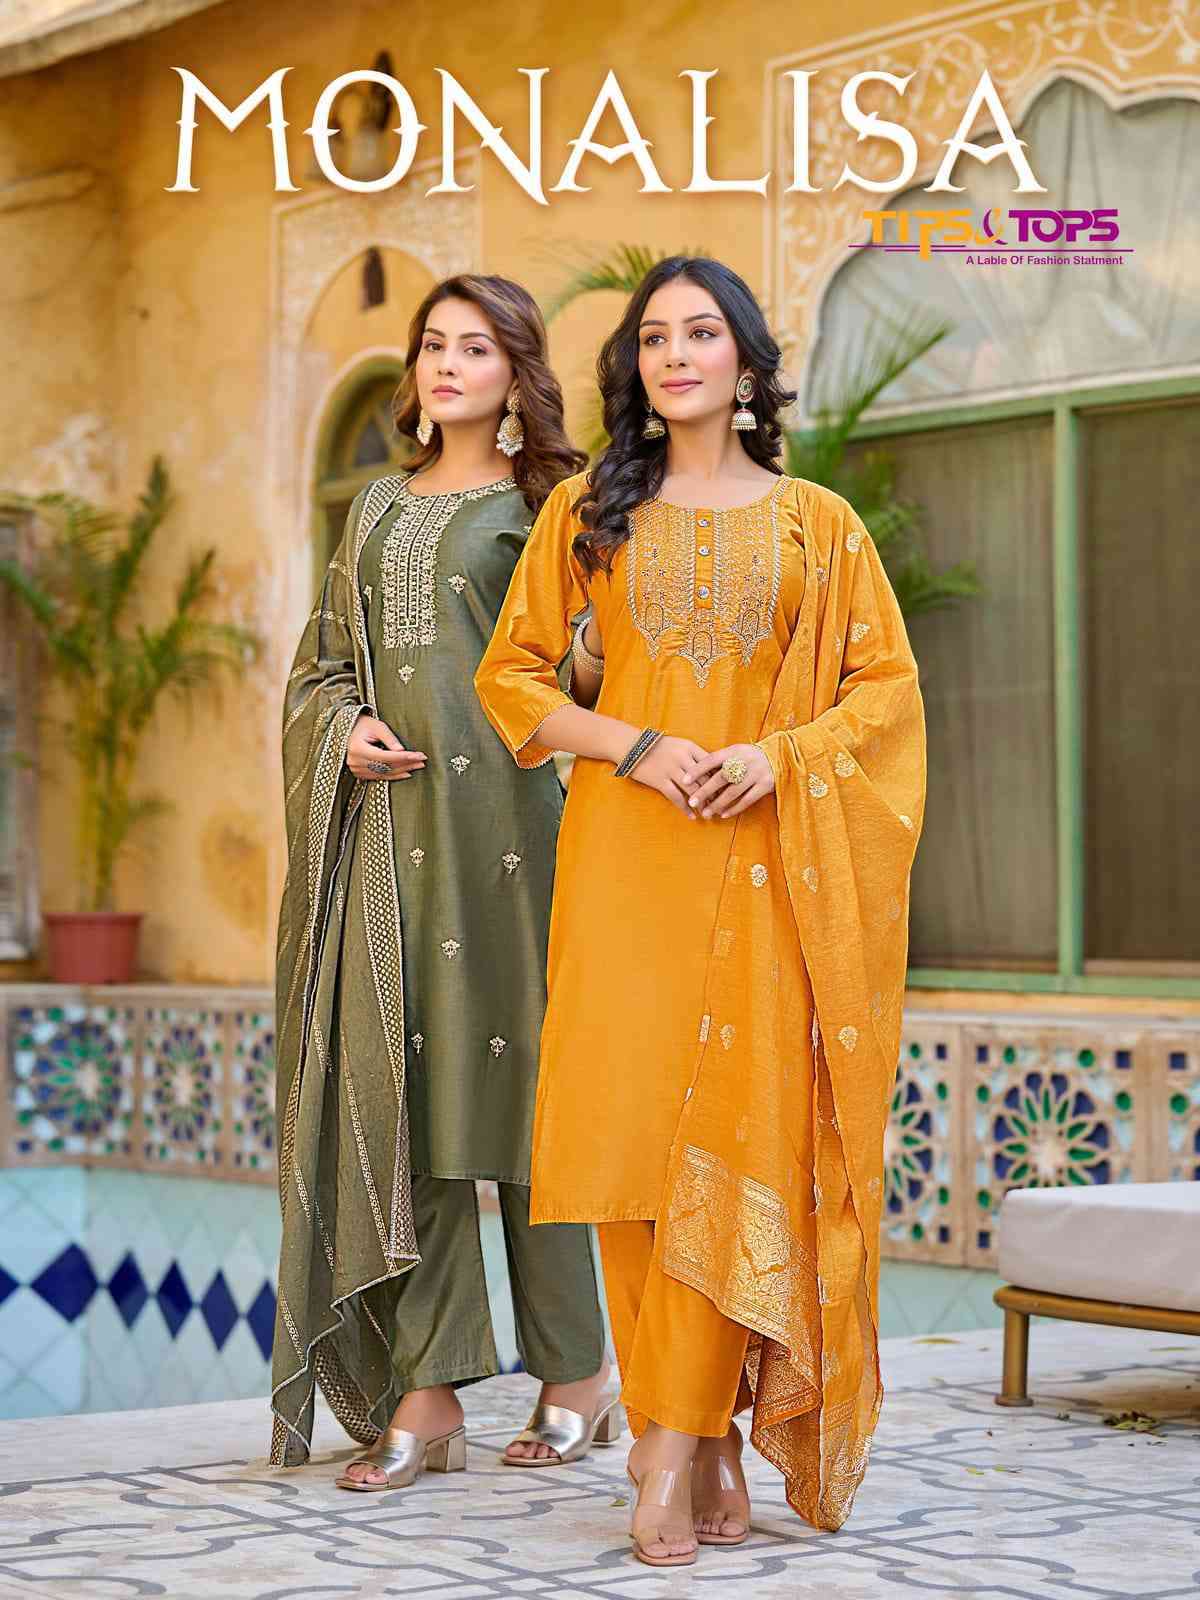 Tips And Tops Monalisa Fancy Chanderi Silk Festive Wear Dress Wholesaler